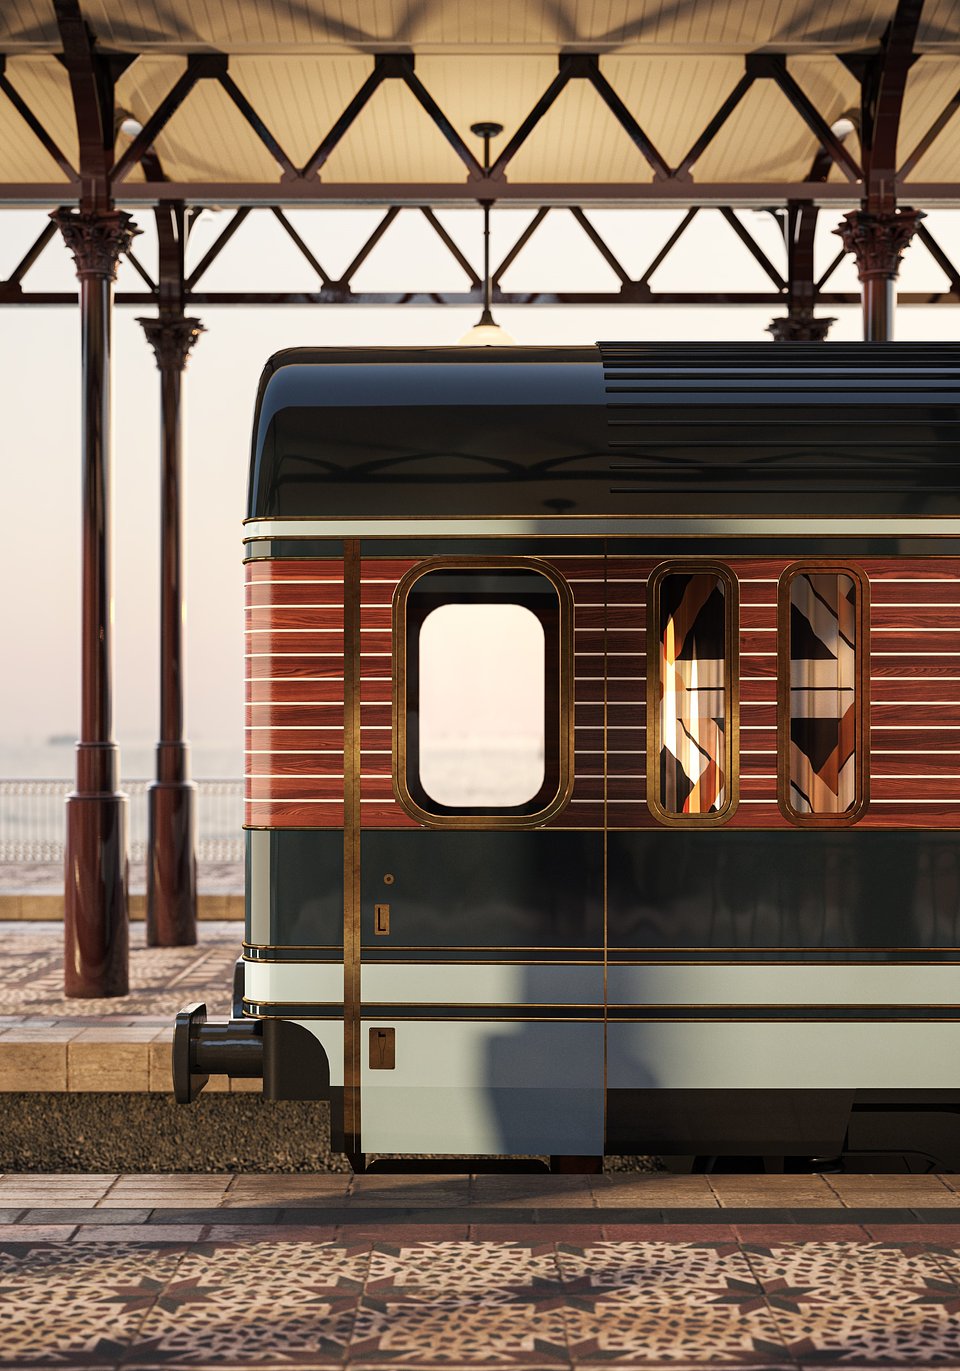 Orient Express powraca po 150 latach